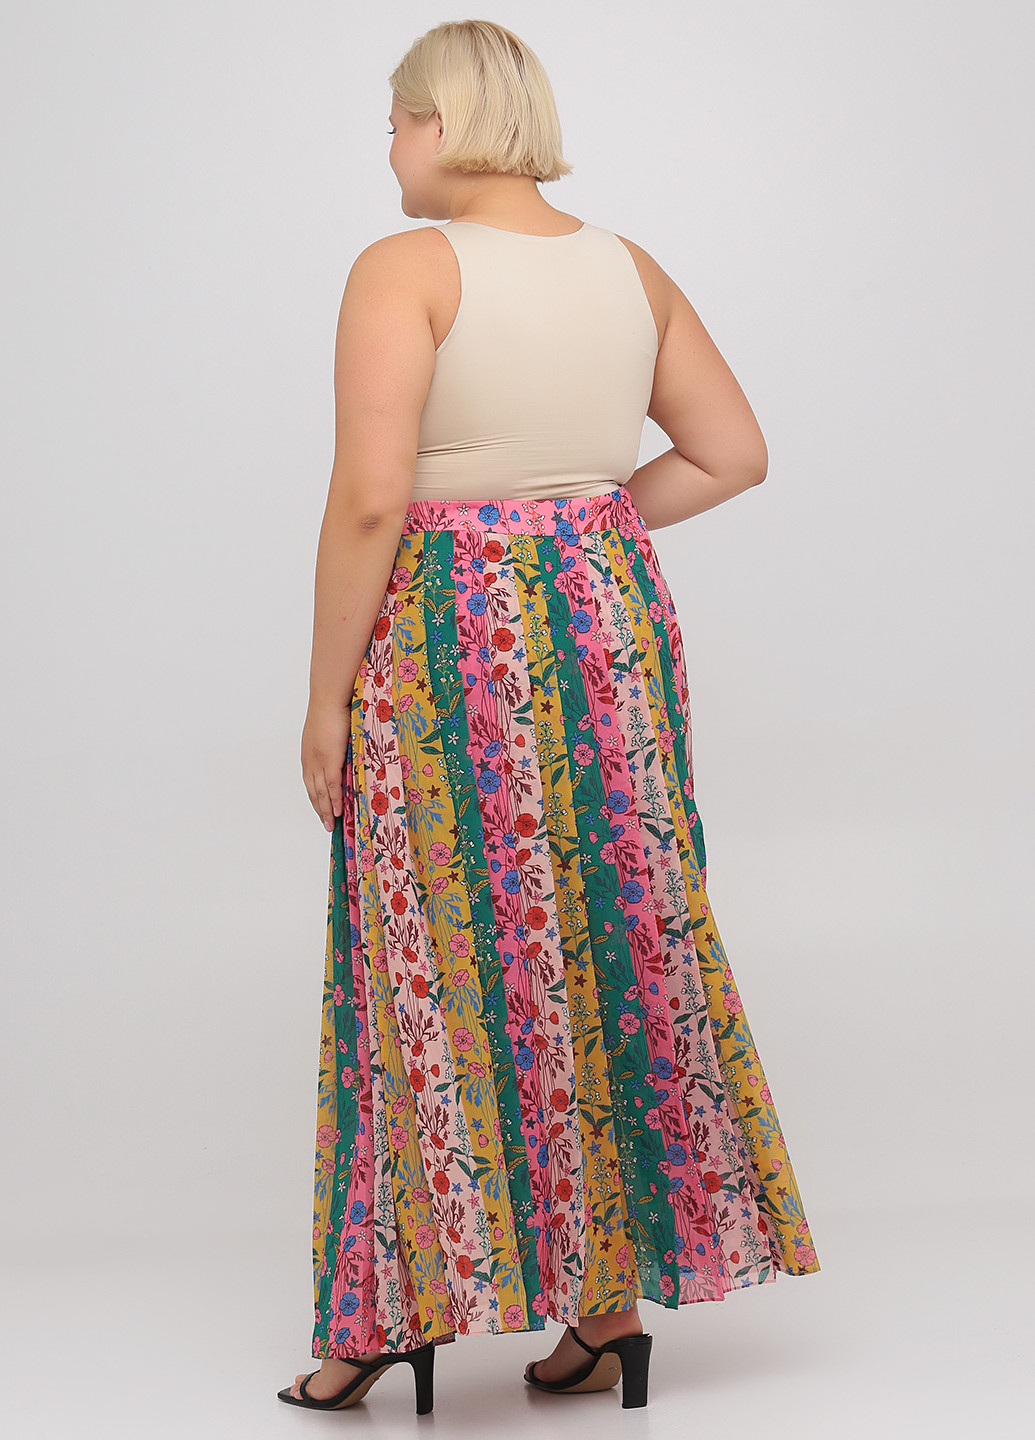 Разноцветная кэжуал цветочной расцветки юбка Boden плиссе, клешированная